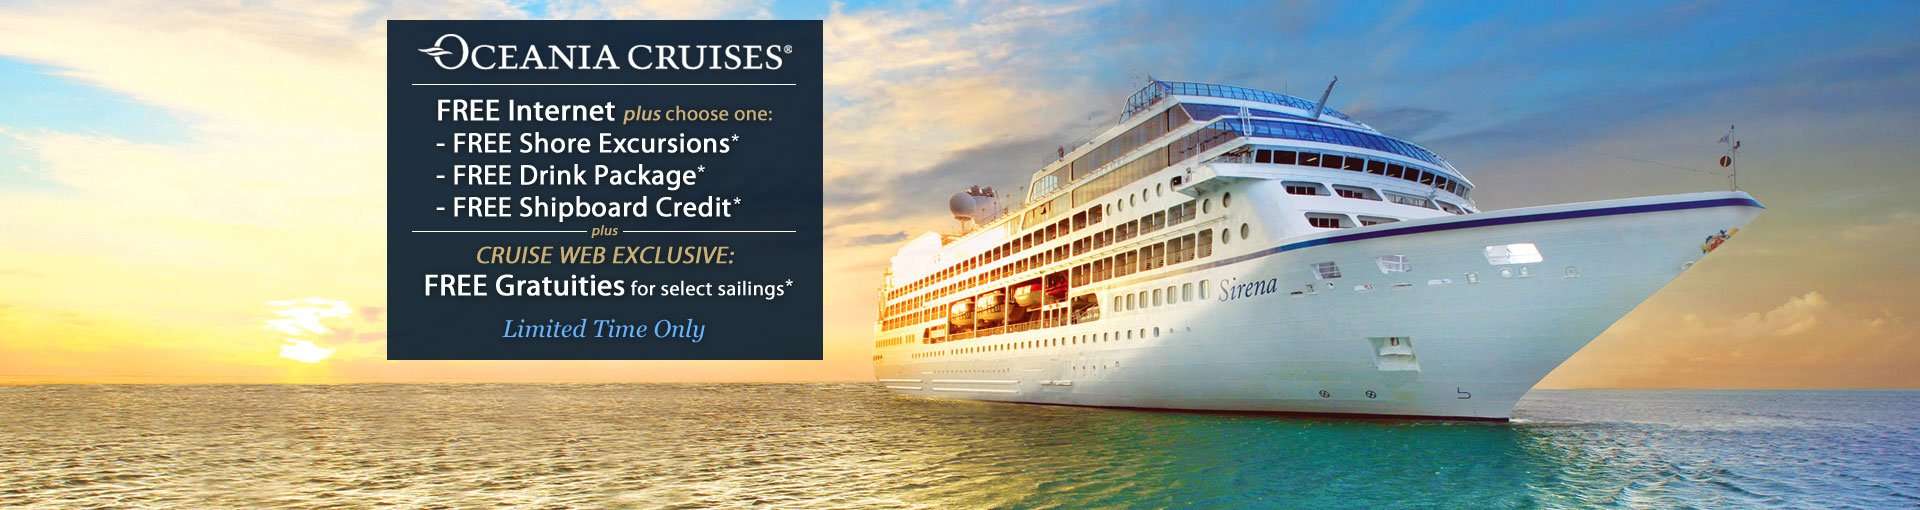 Oceania Cruise Specials